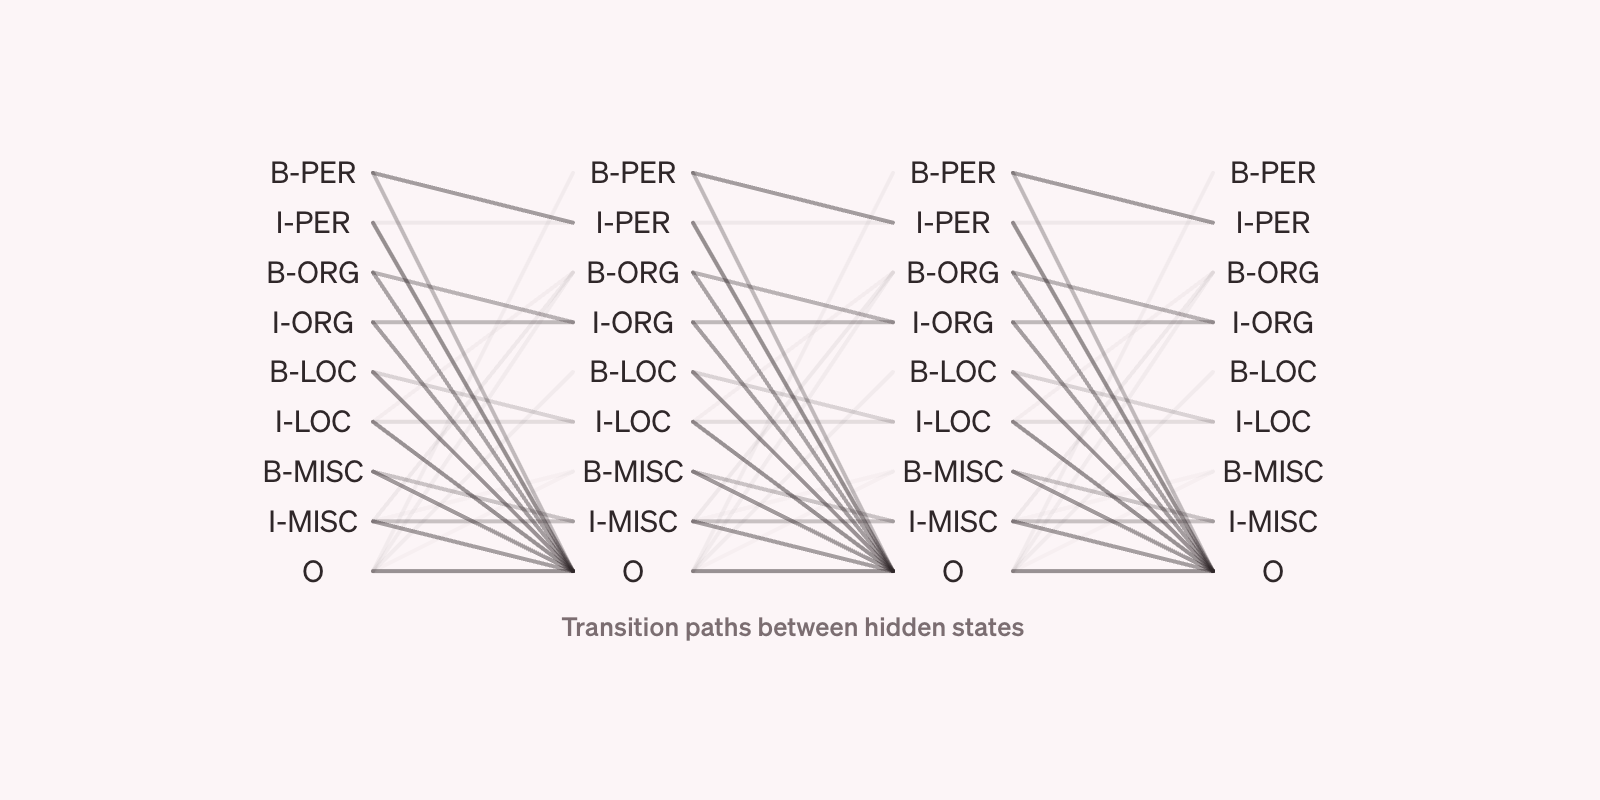 Transition paths of a Hidden Markov Model